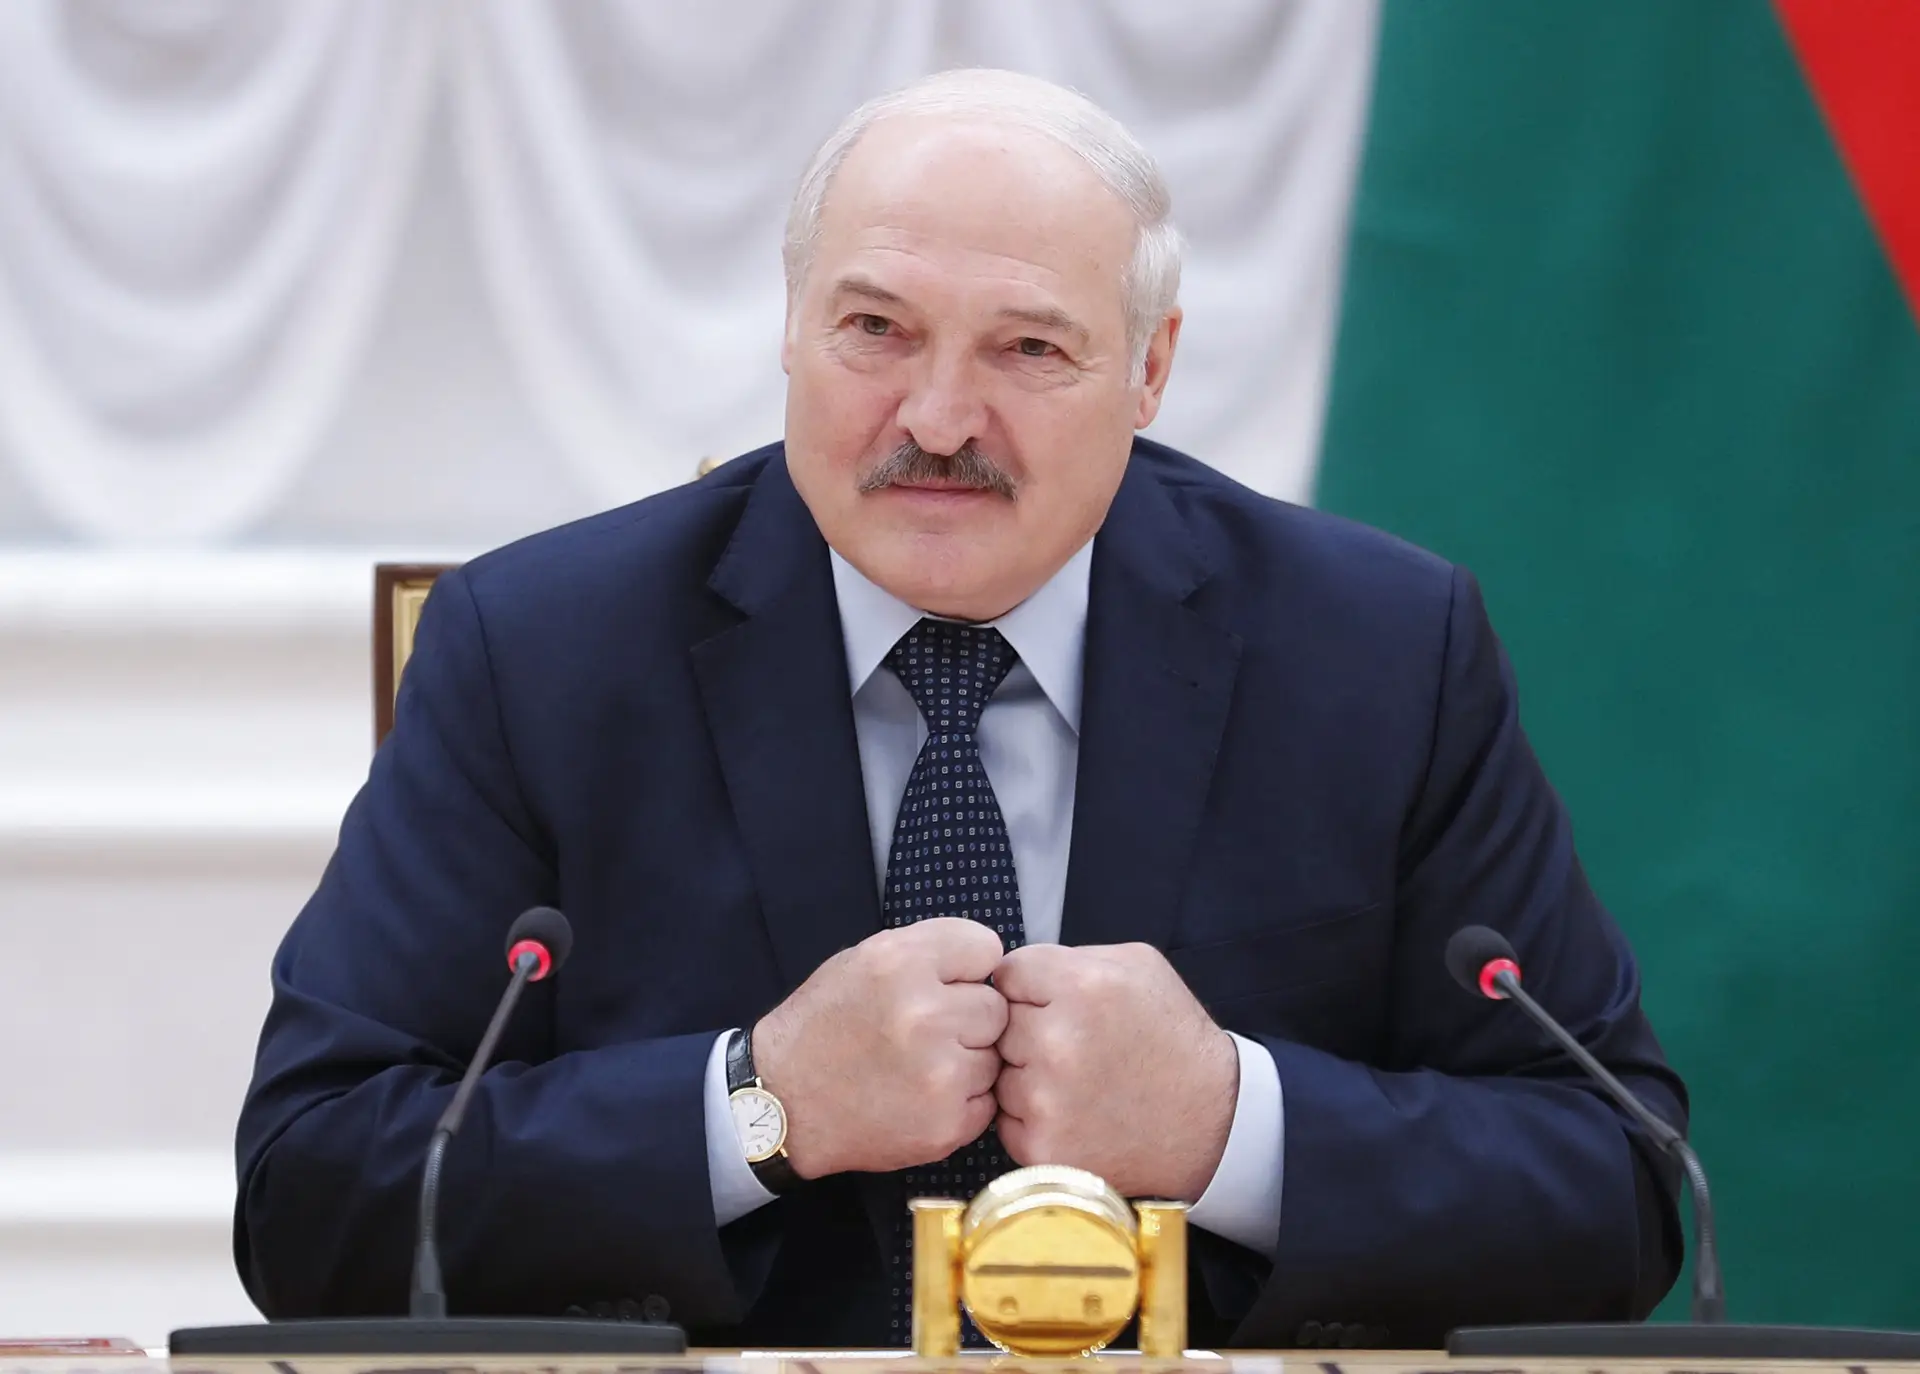 Bielorrússia "não vai participar em qualquer guerra", Lukashenko descarta mobilização militar